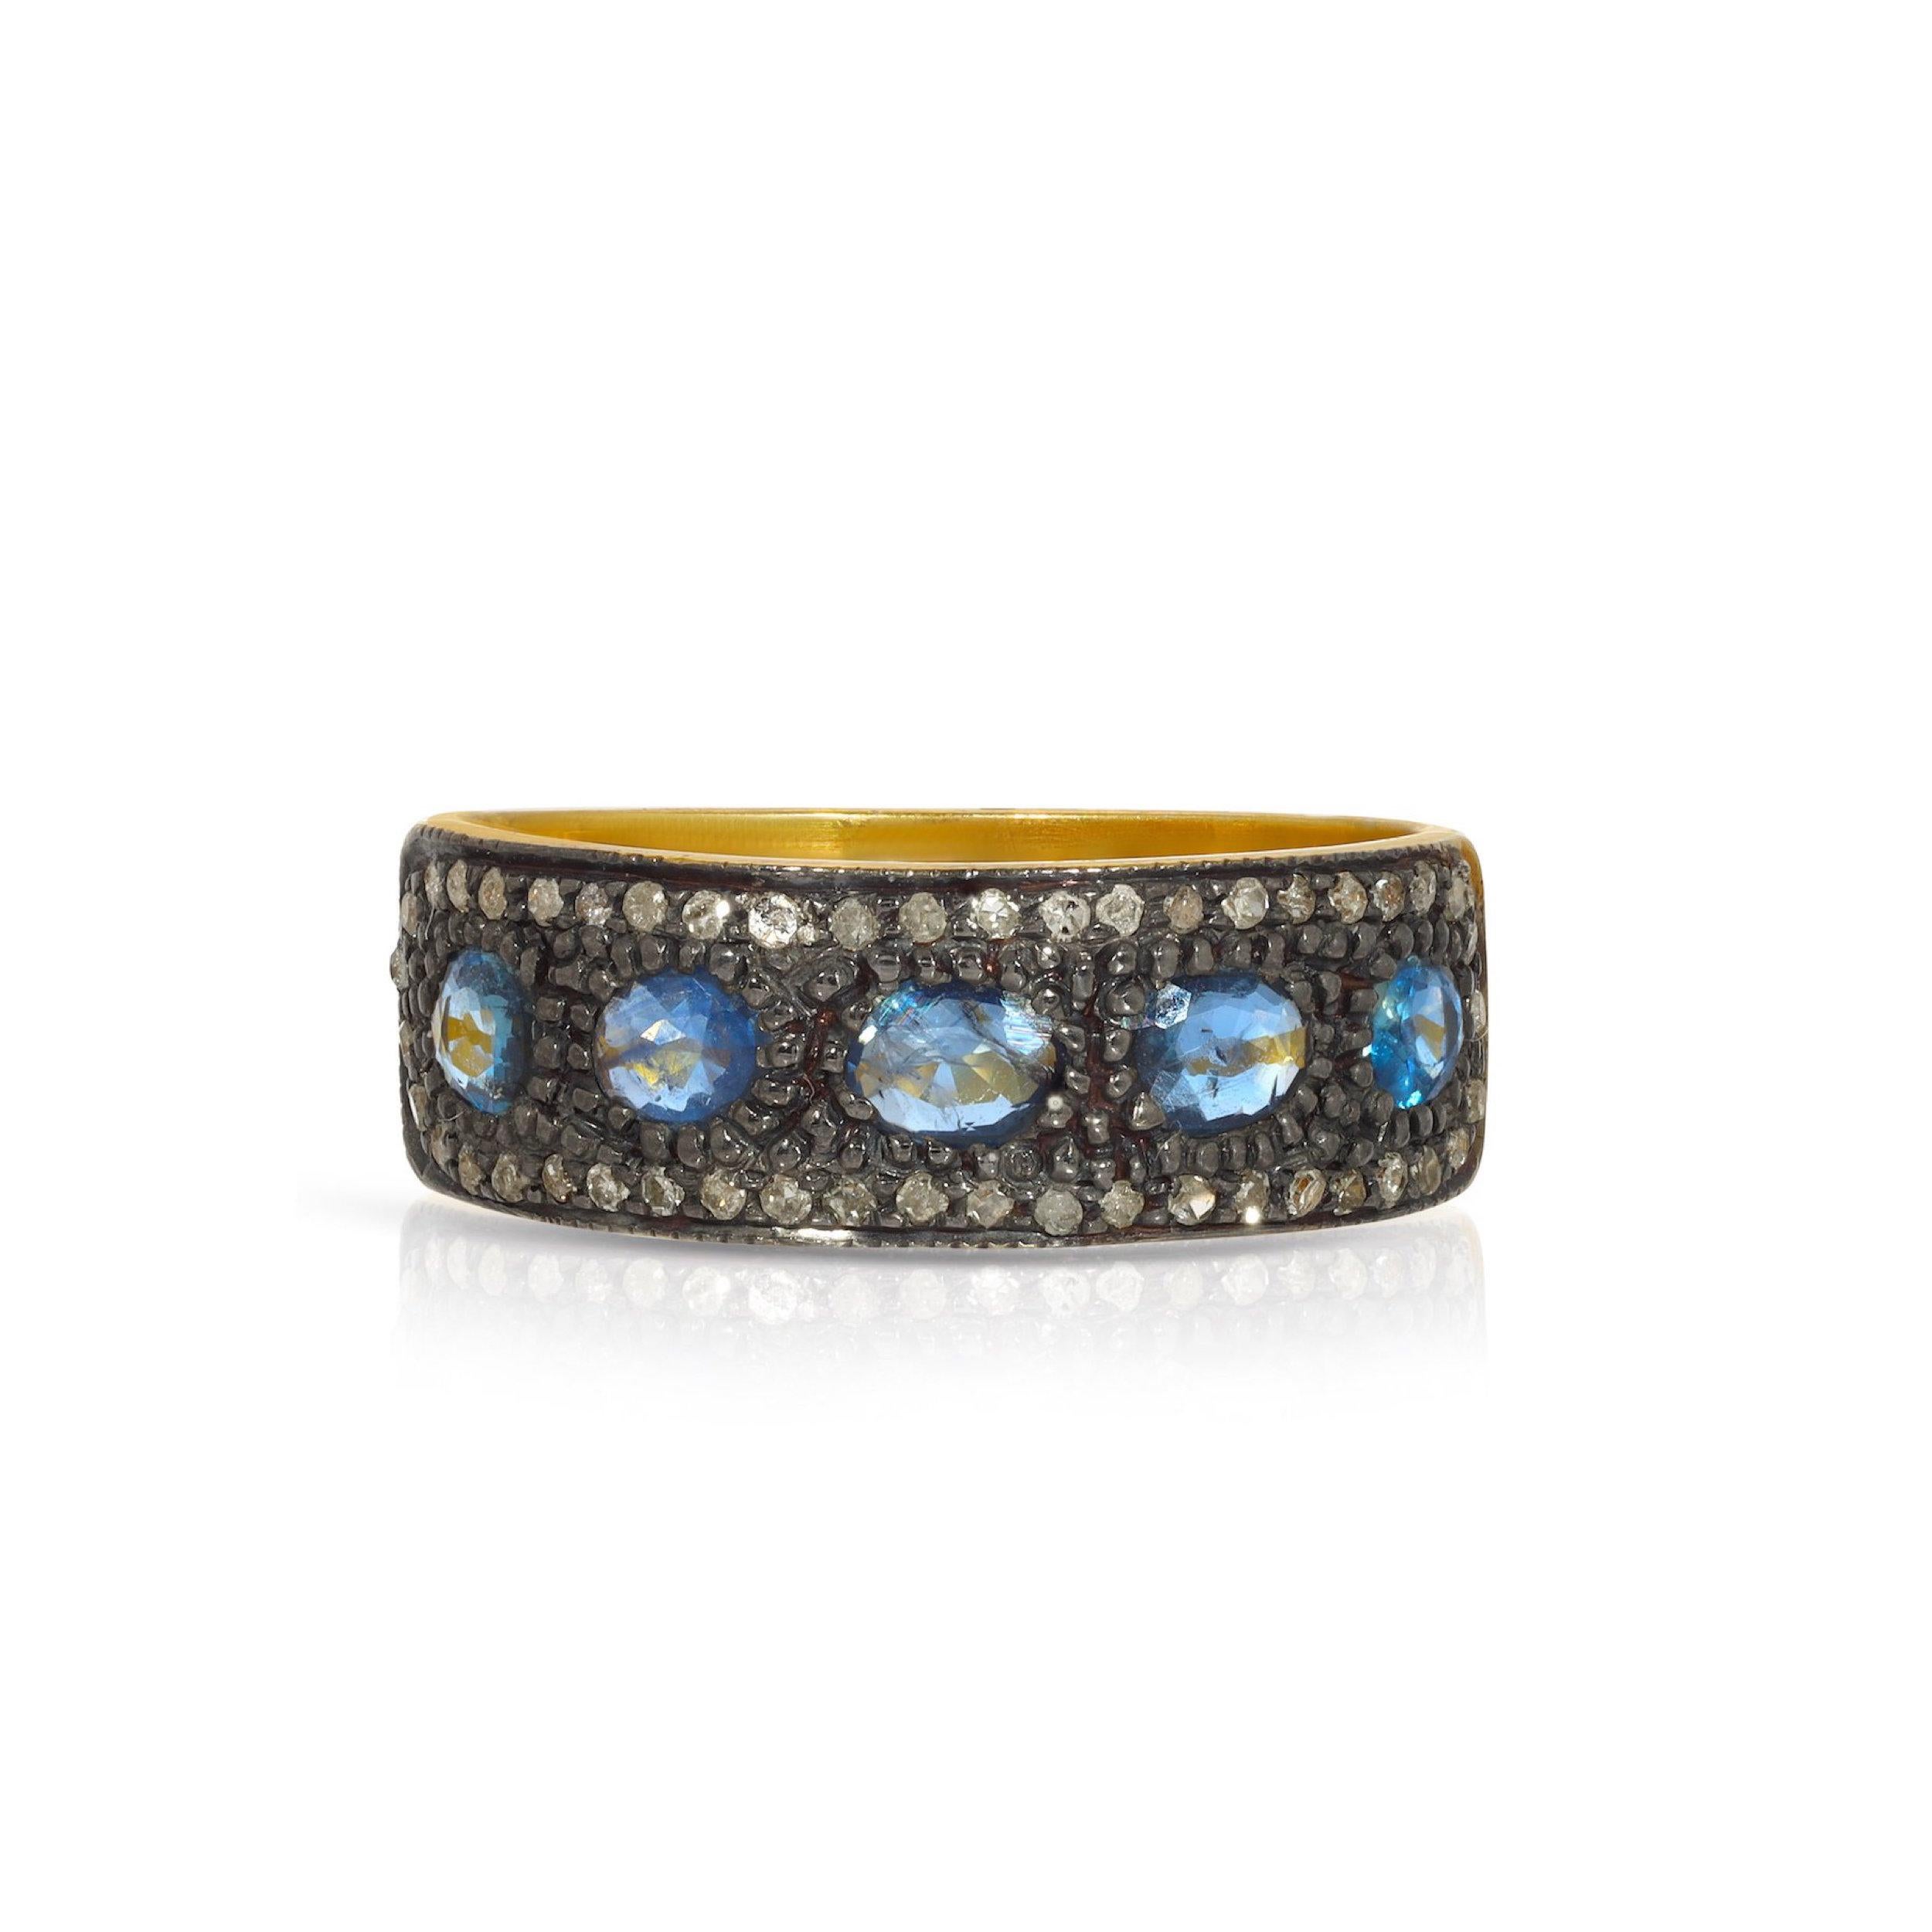 Ein schönes Band im Jaipur-Mogul-Stil mit einer Mischung aus Edelsteinen und Metallen. Dieser wunderschöne Ring besteht aus 1,65 Karat atemberaubenden lila-blauen Saphiren, die in geschwärztem, oxidiertem Silber gefasst sind, akzentuiert mit 0,35